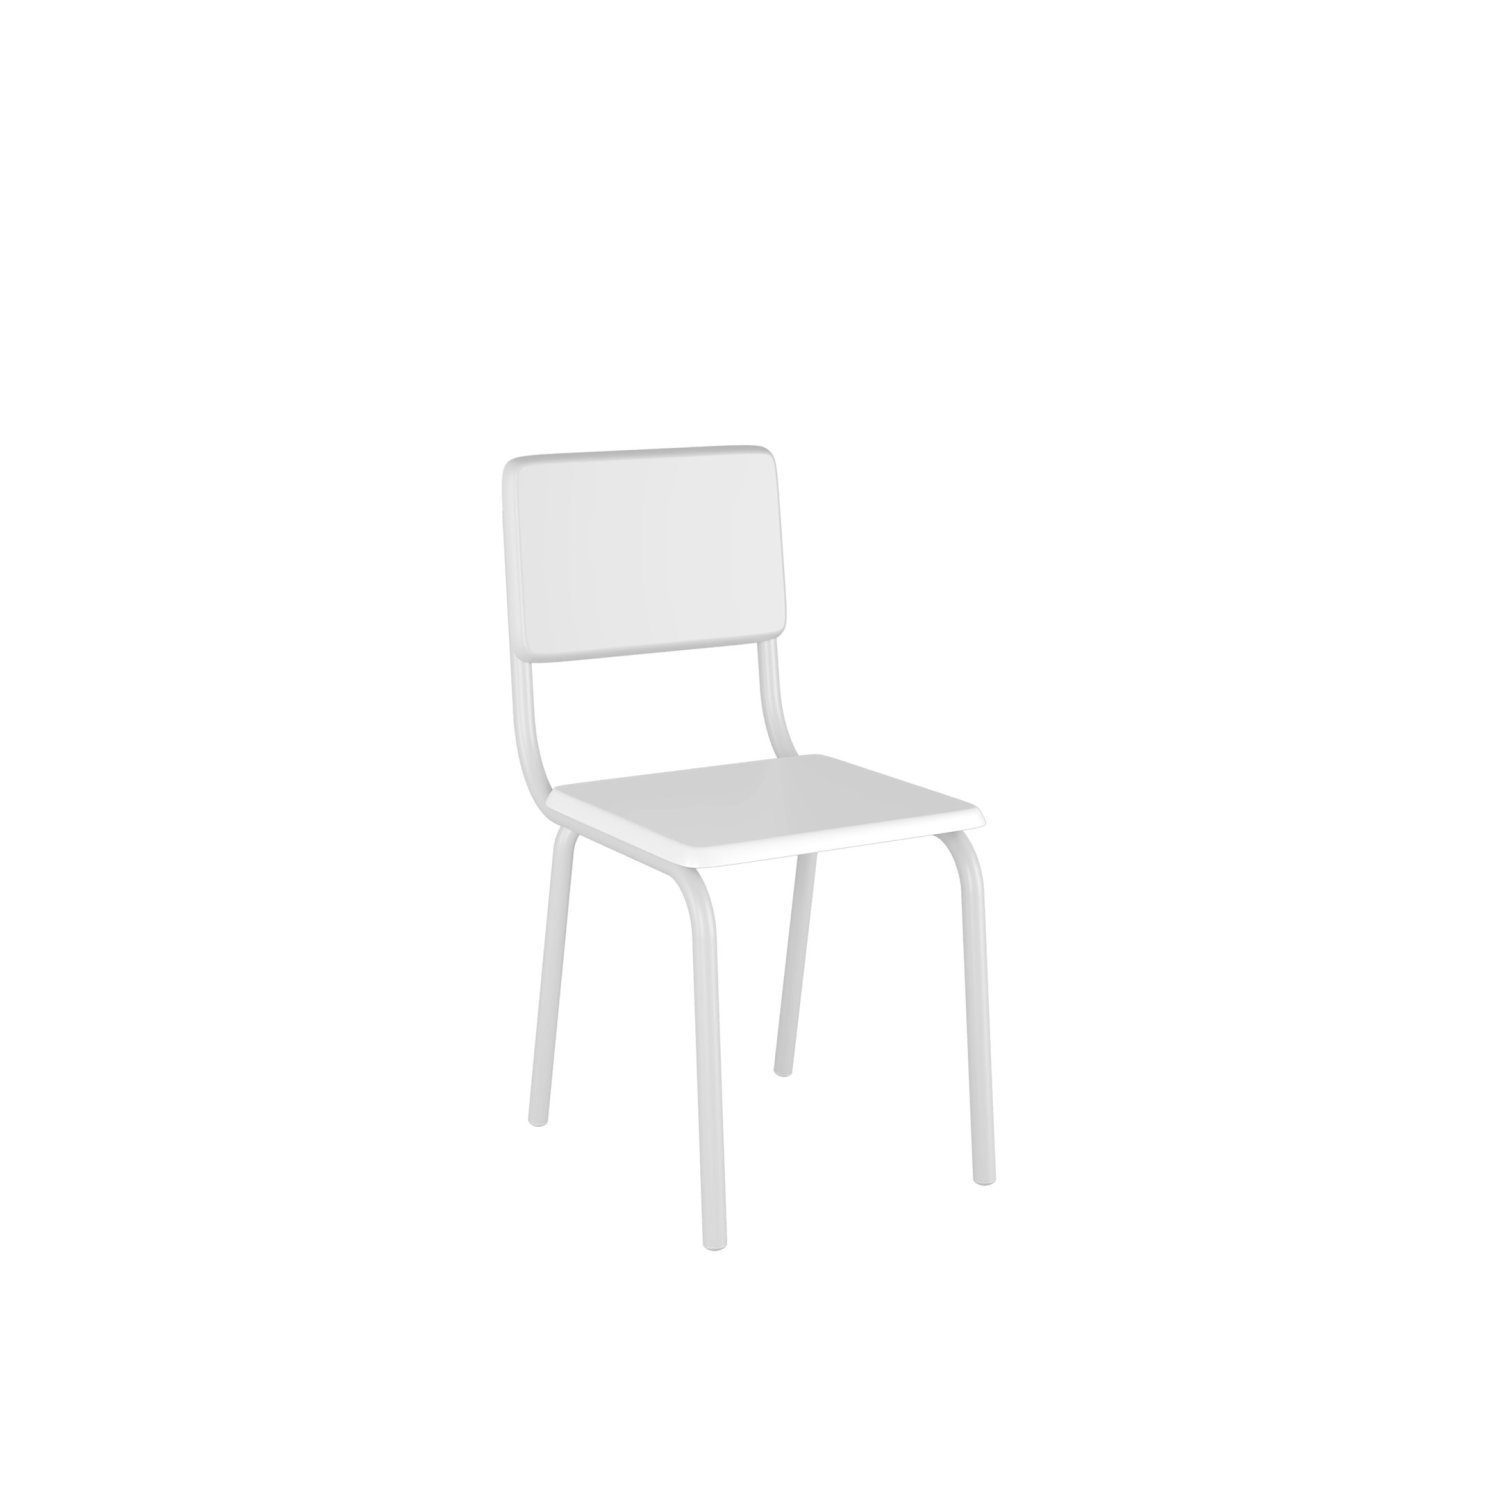 Conjunto Infantil com Mesa 75x50cm com 4 Cadeiras Laura - 6